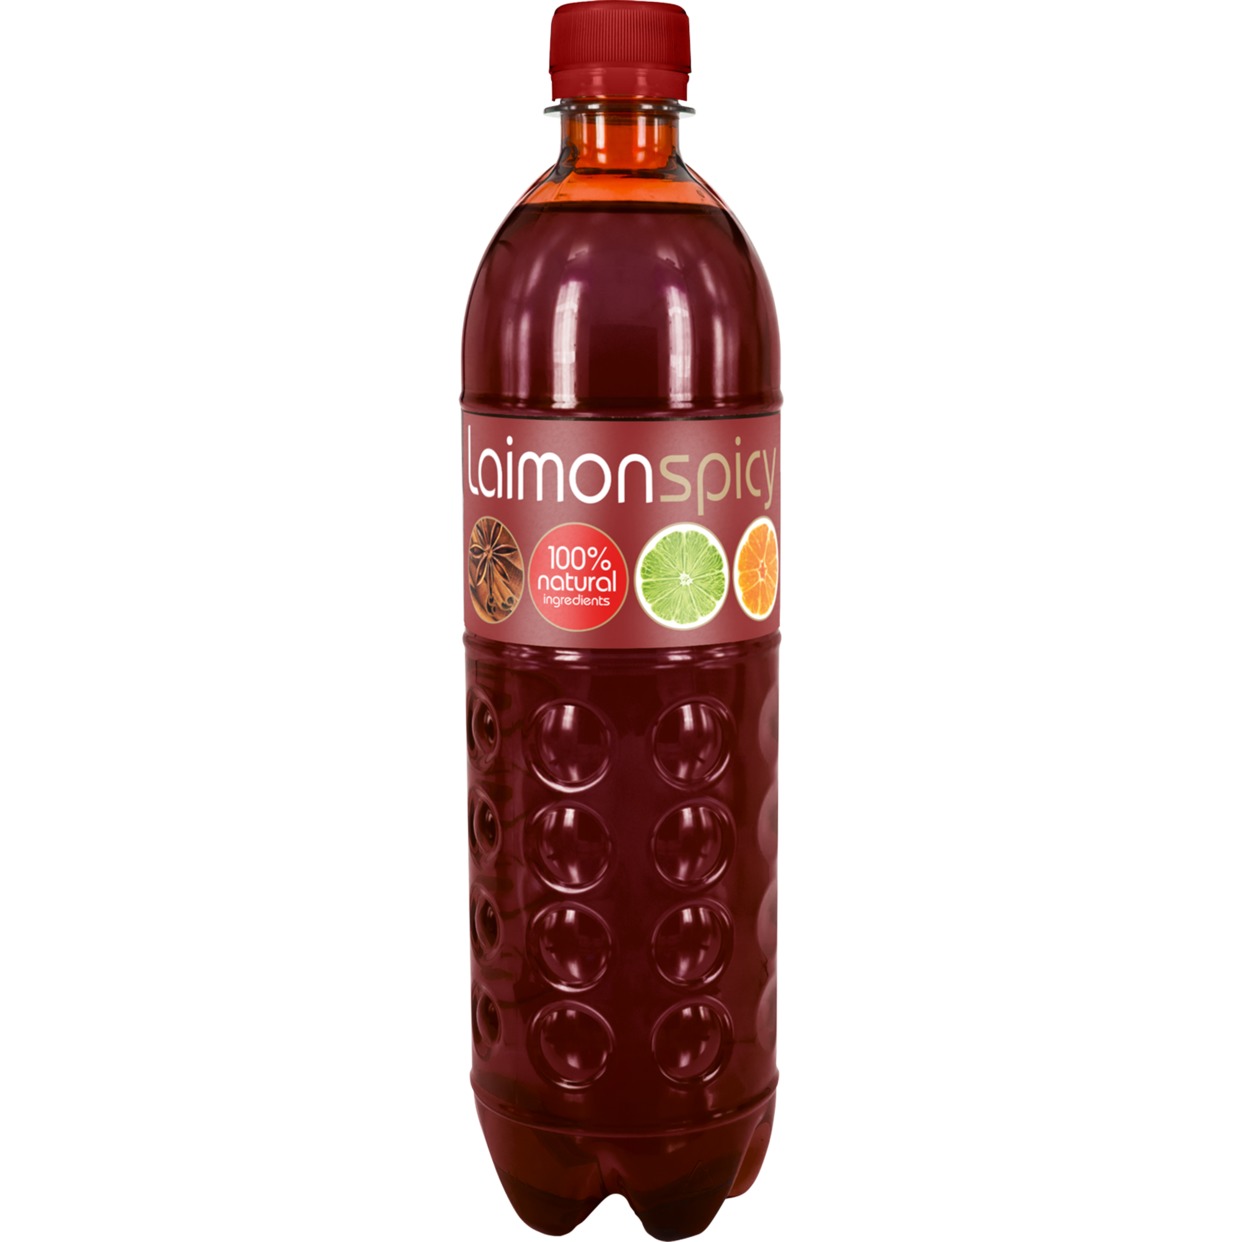 Напиток безалкогольный среднегазированный "Лаймон спайси (Laimon spicy)" 0,5л